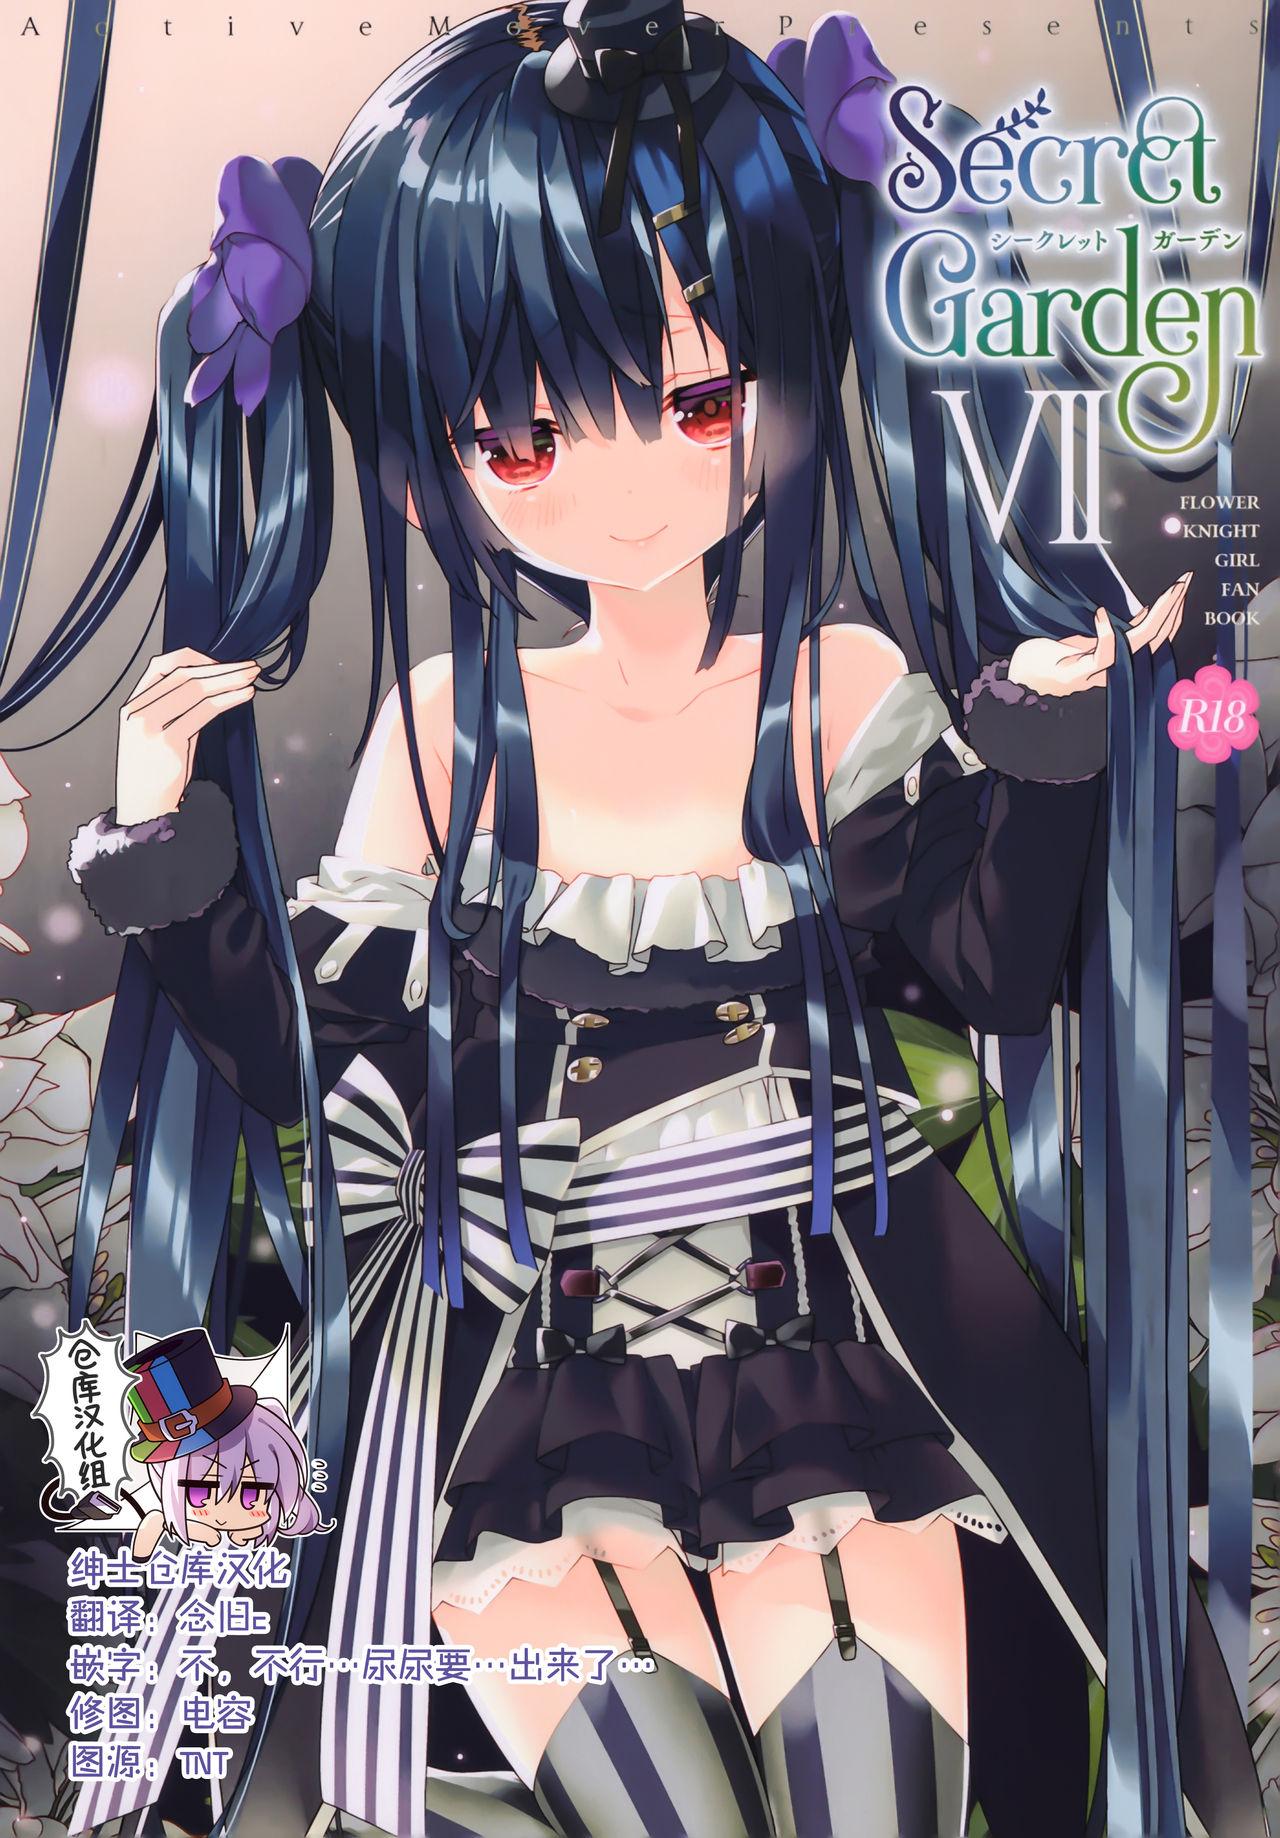 Secret Garden VII 0